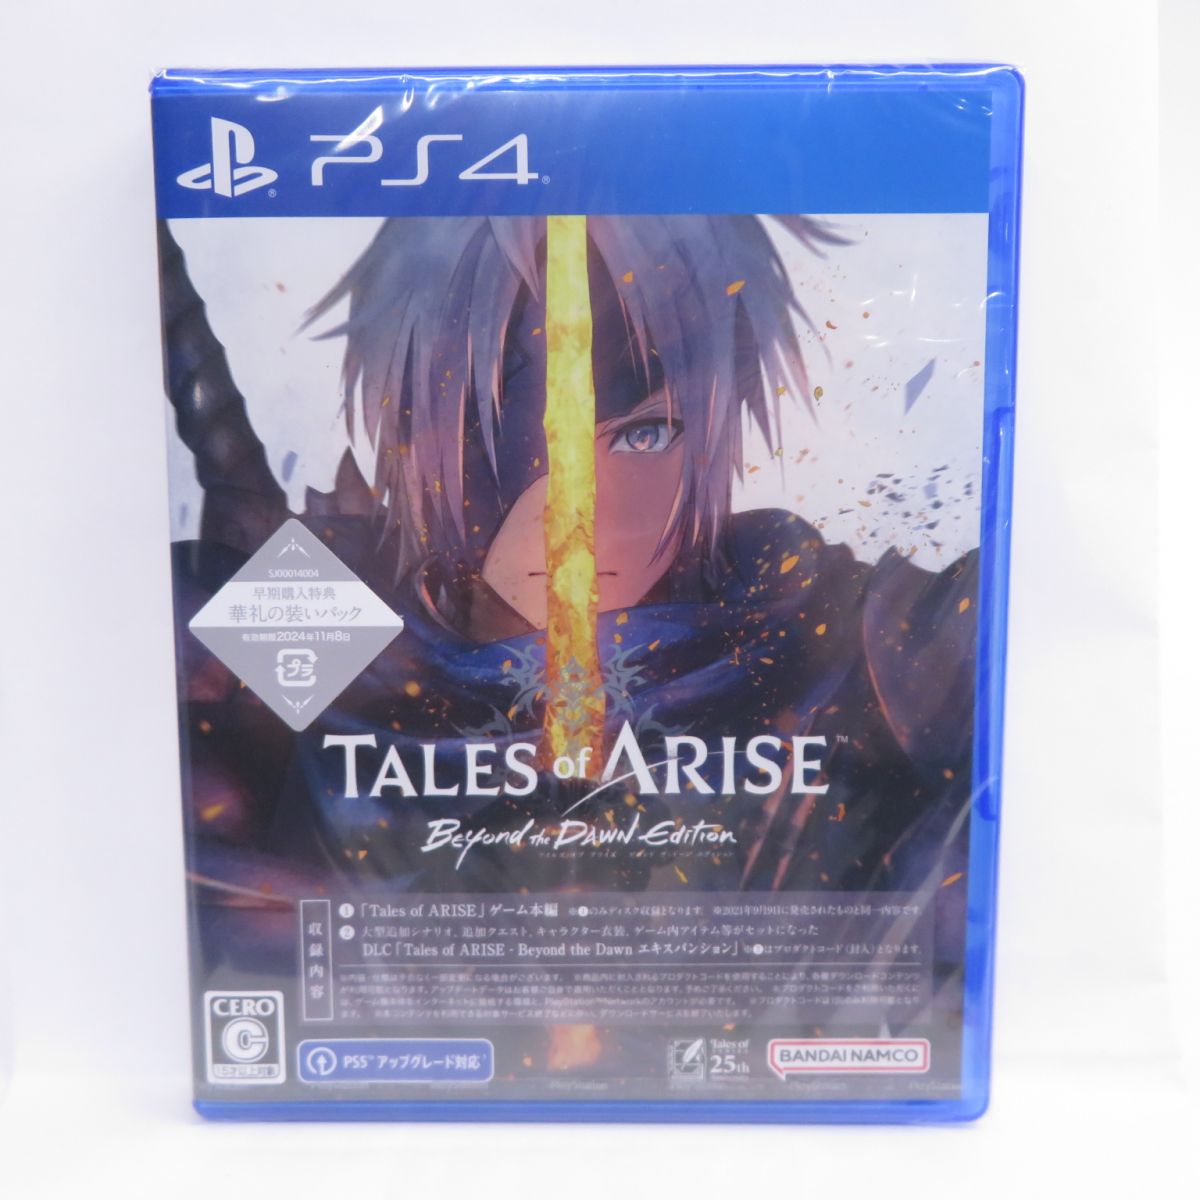 【未開封】PS4ソフト Tales of ARISE - Beyond the Dawn Edition テイルズ オブ アライズ ビヨンド ザ ドーン エディション